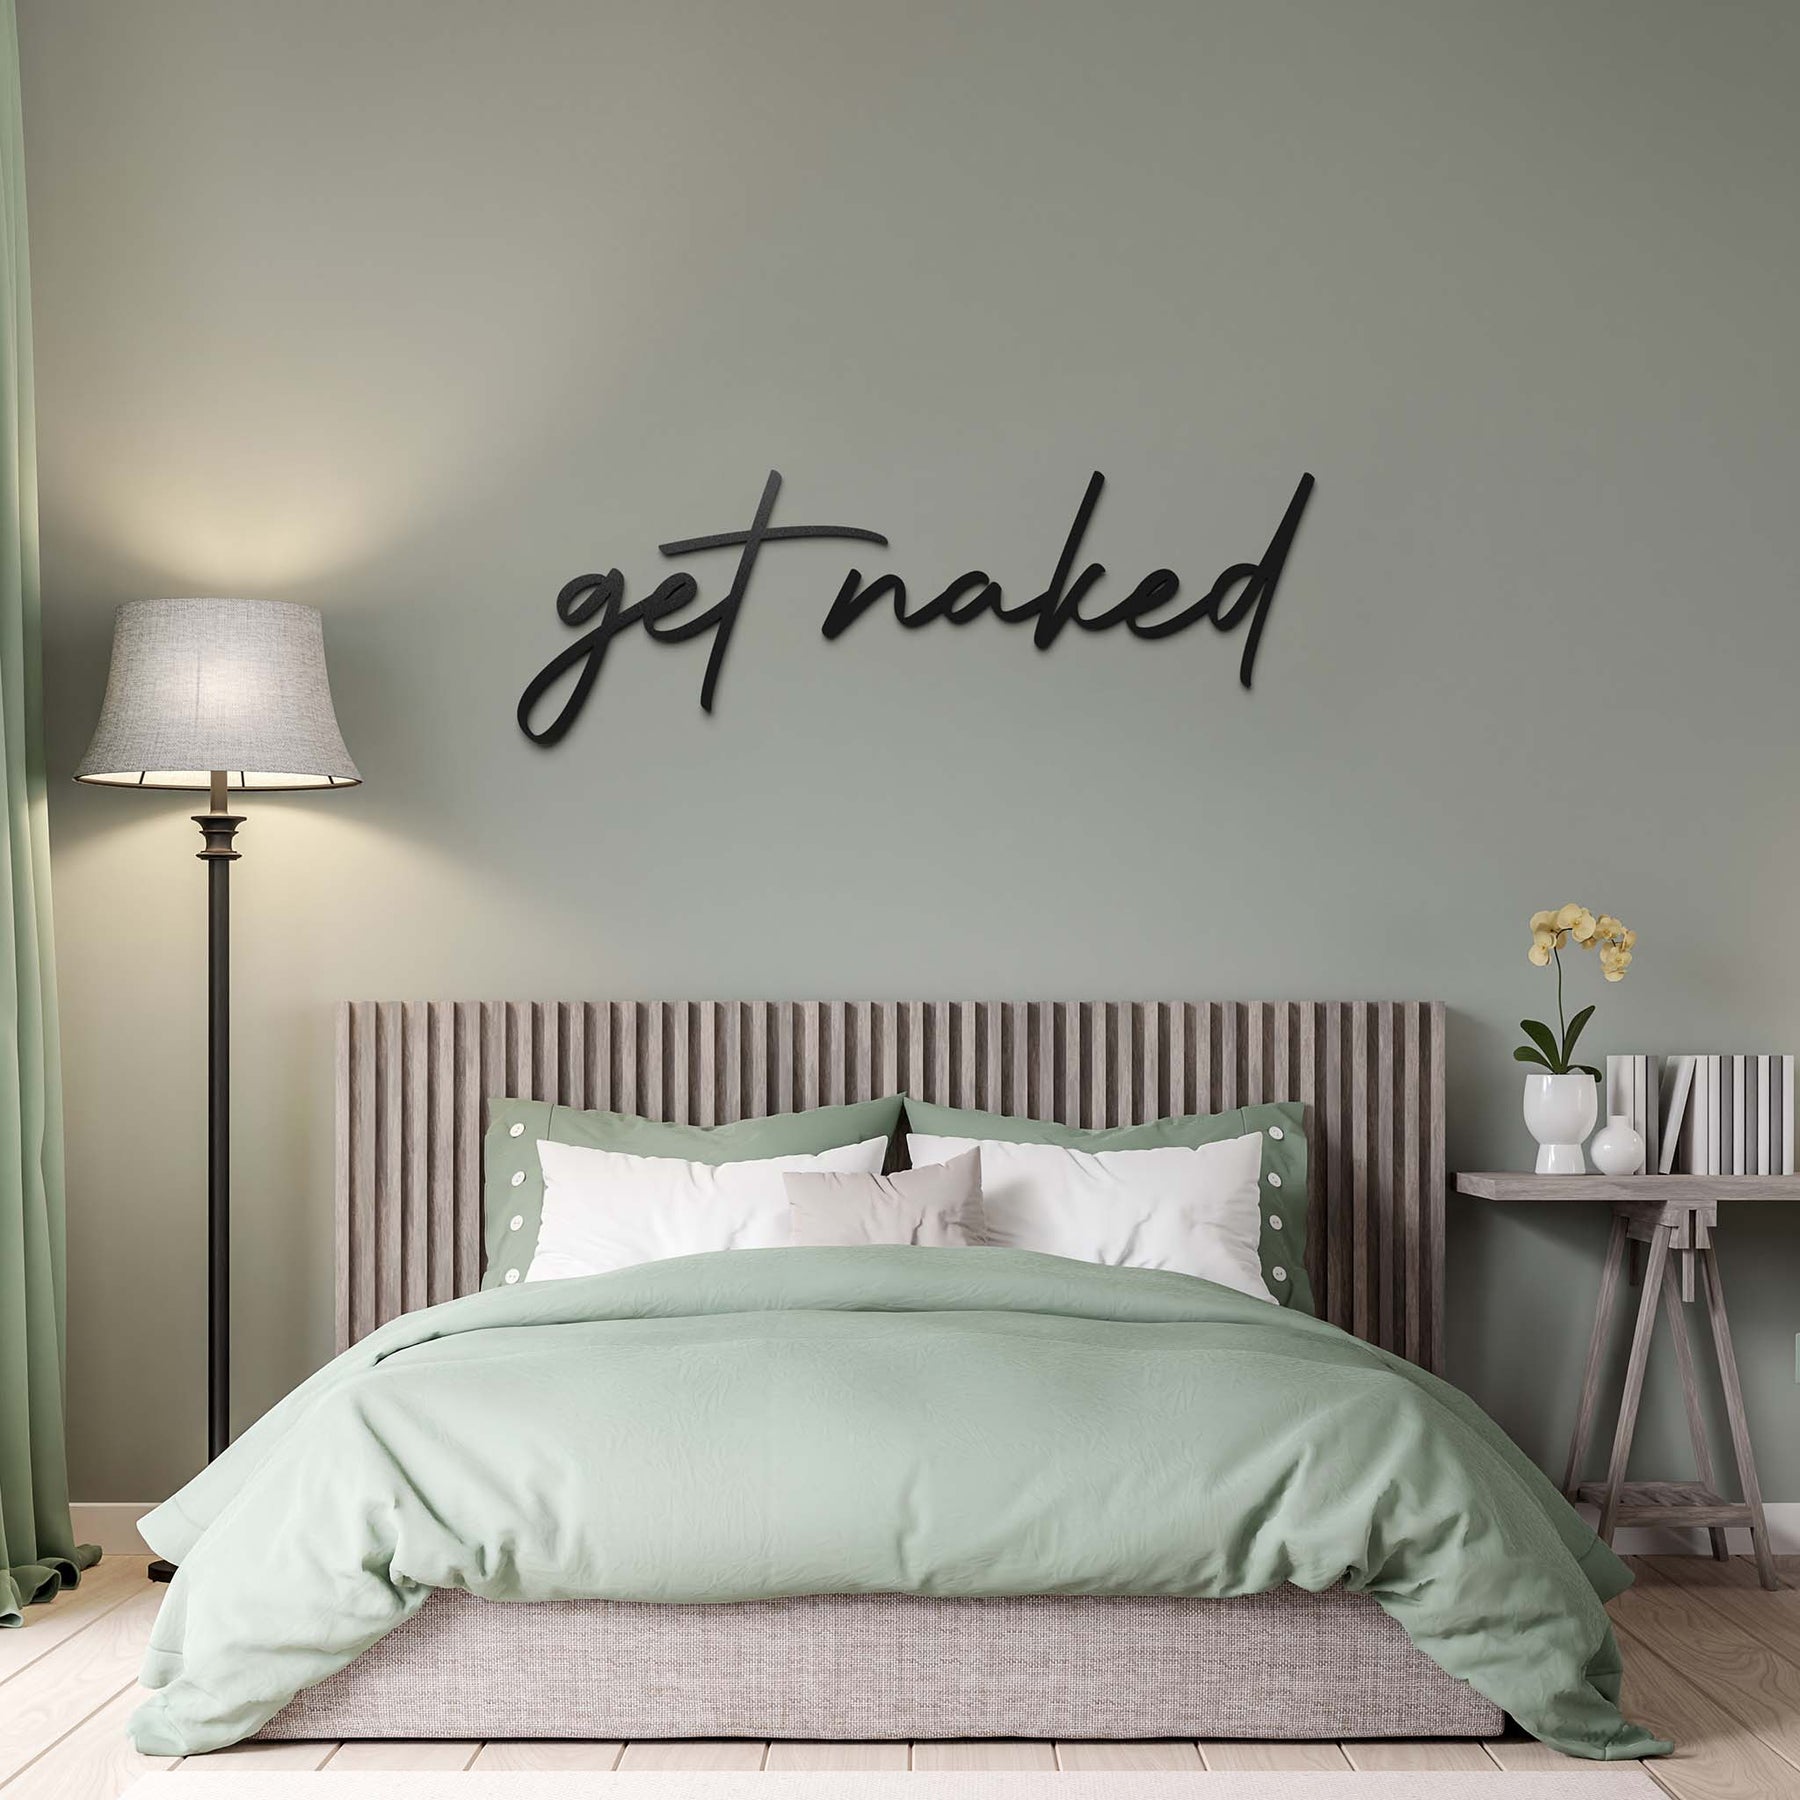 Mesi Get Naked Wanddekoration in einem Schlafzimmer ueber einem Holzbett mit gruenen Lacken an einer gruenen Wand